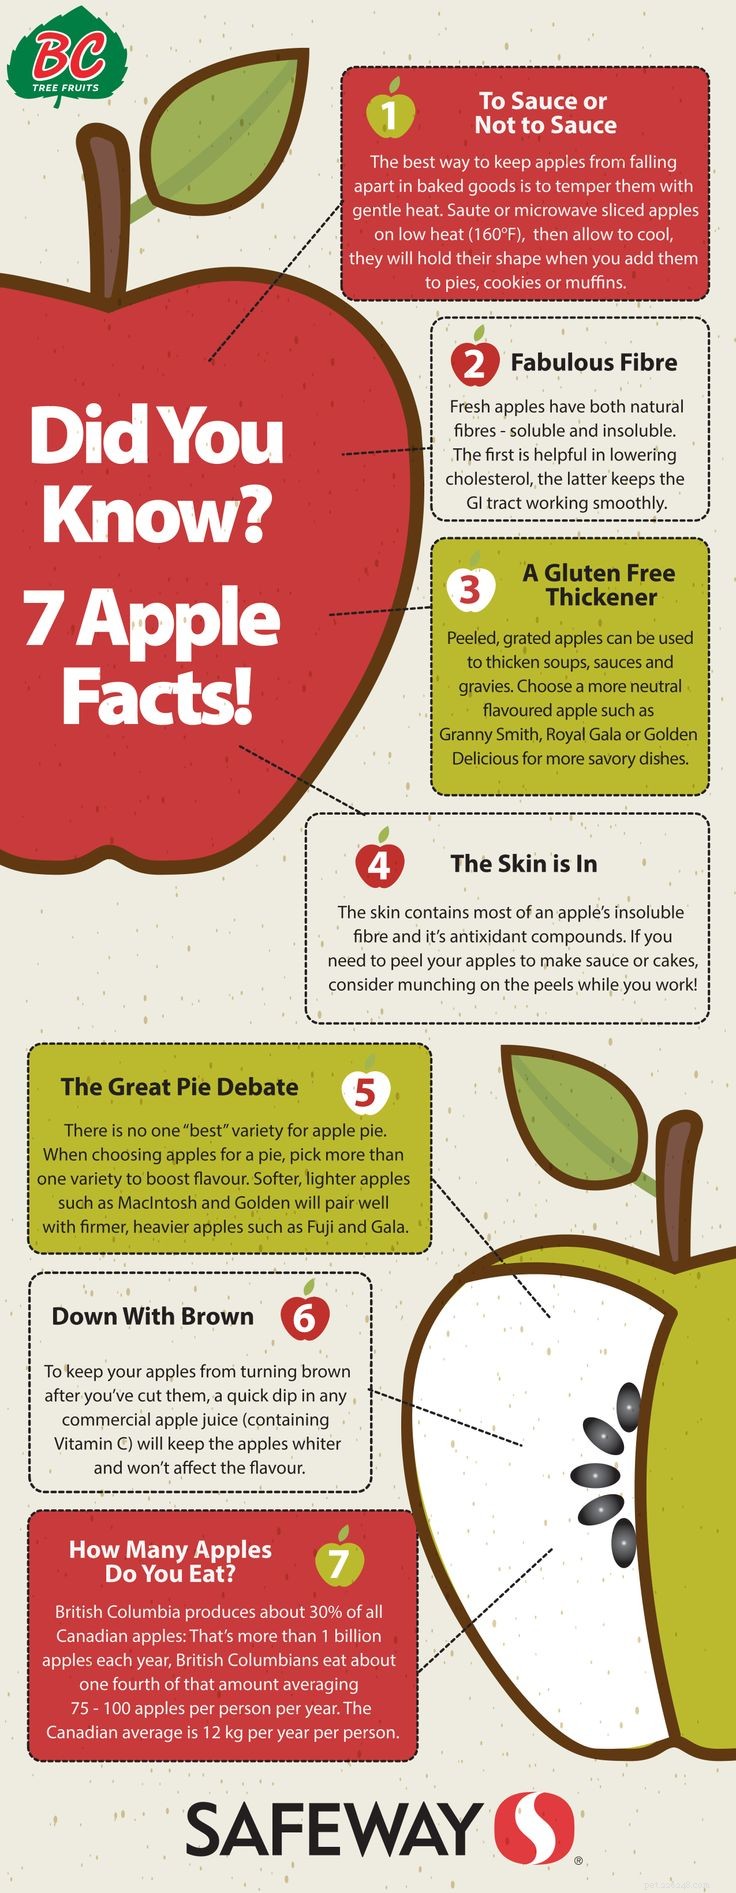 Les chiens peuvent-ils manger des pommes ? 8 avantages potentiels et 3 précautions